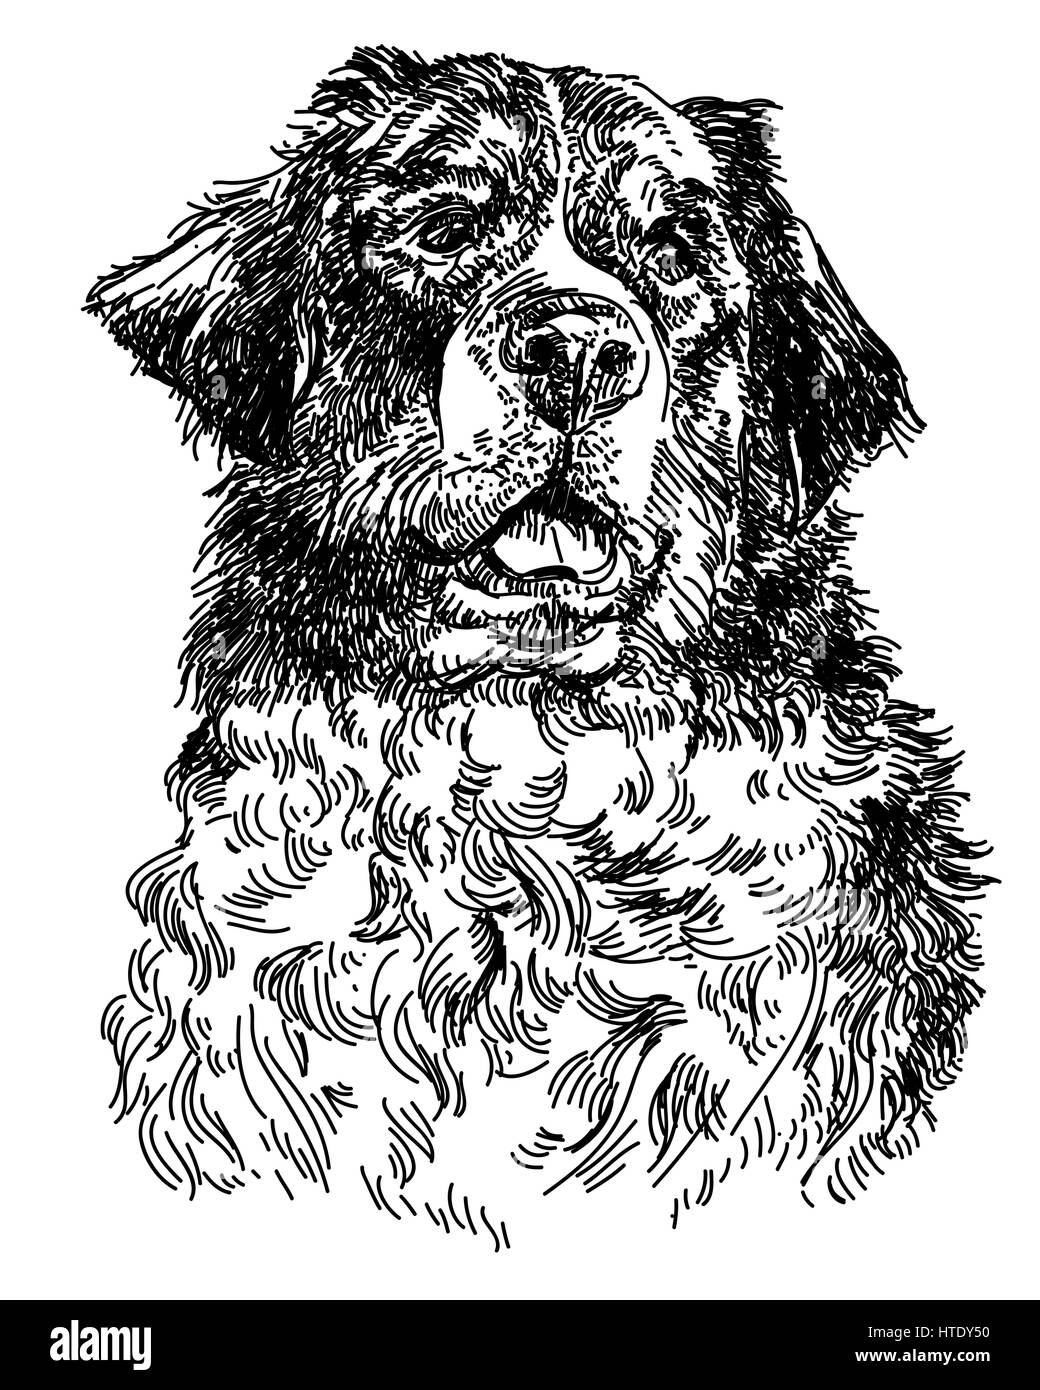 Graphische Portrait des Schweizer Berner Hund, großer schwarzer Hund Schweizer Sennenhund, Handzeichnung Abbildung. Vektor isoliert auf einem weißen Hintergrund. Stock Vektor